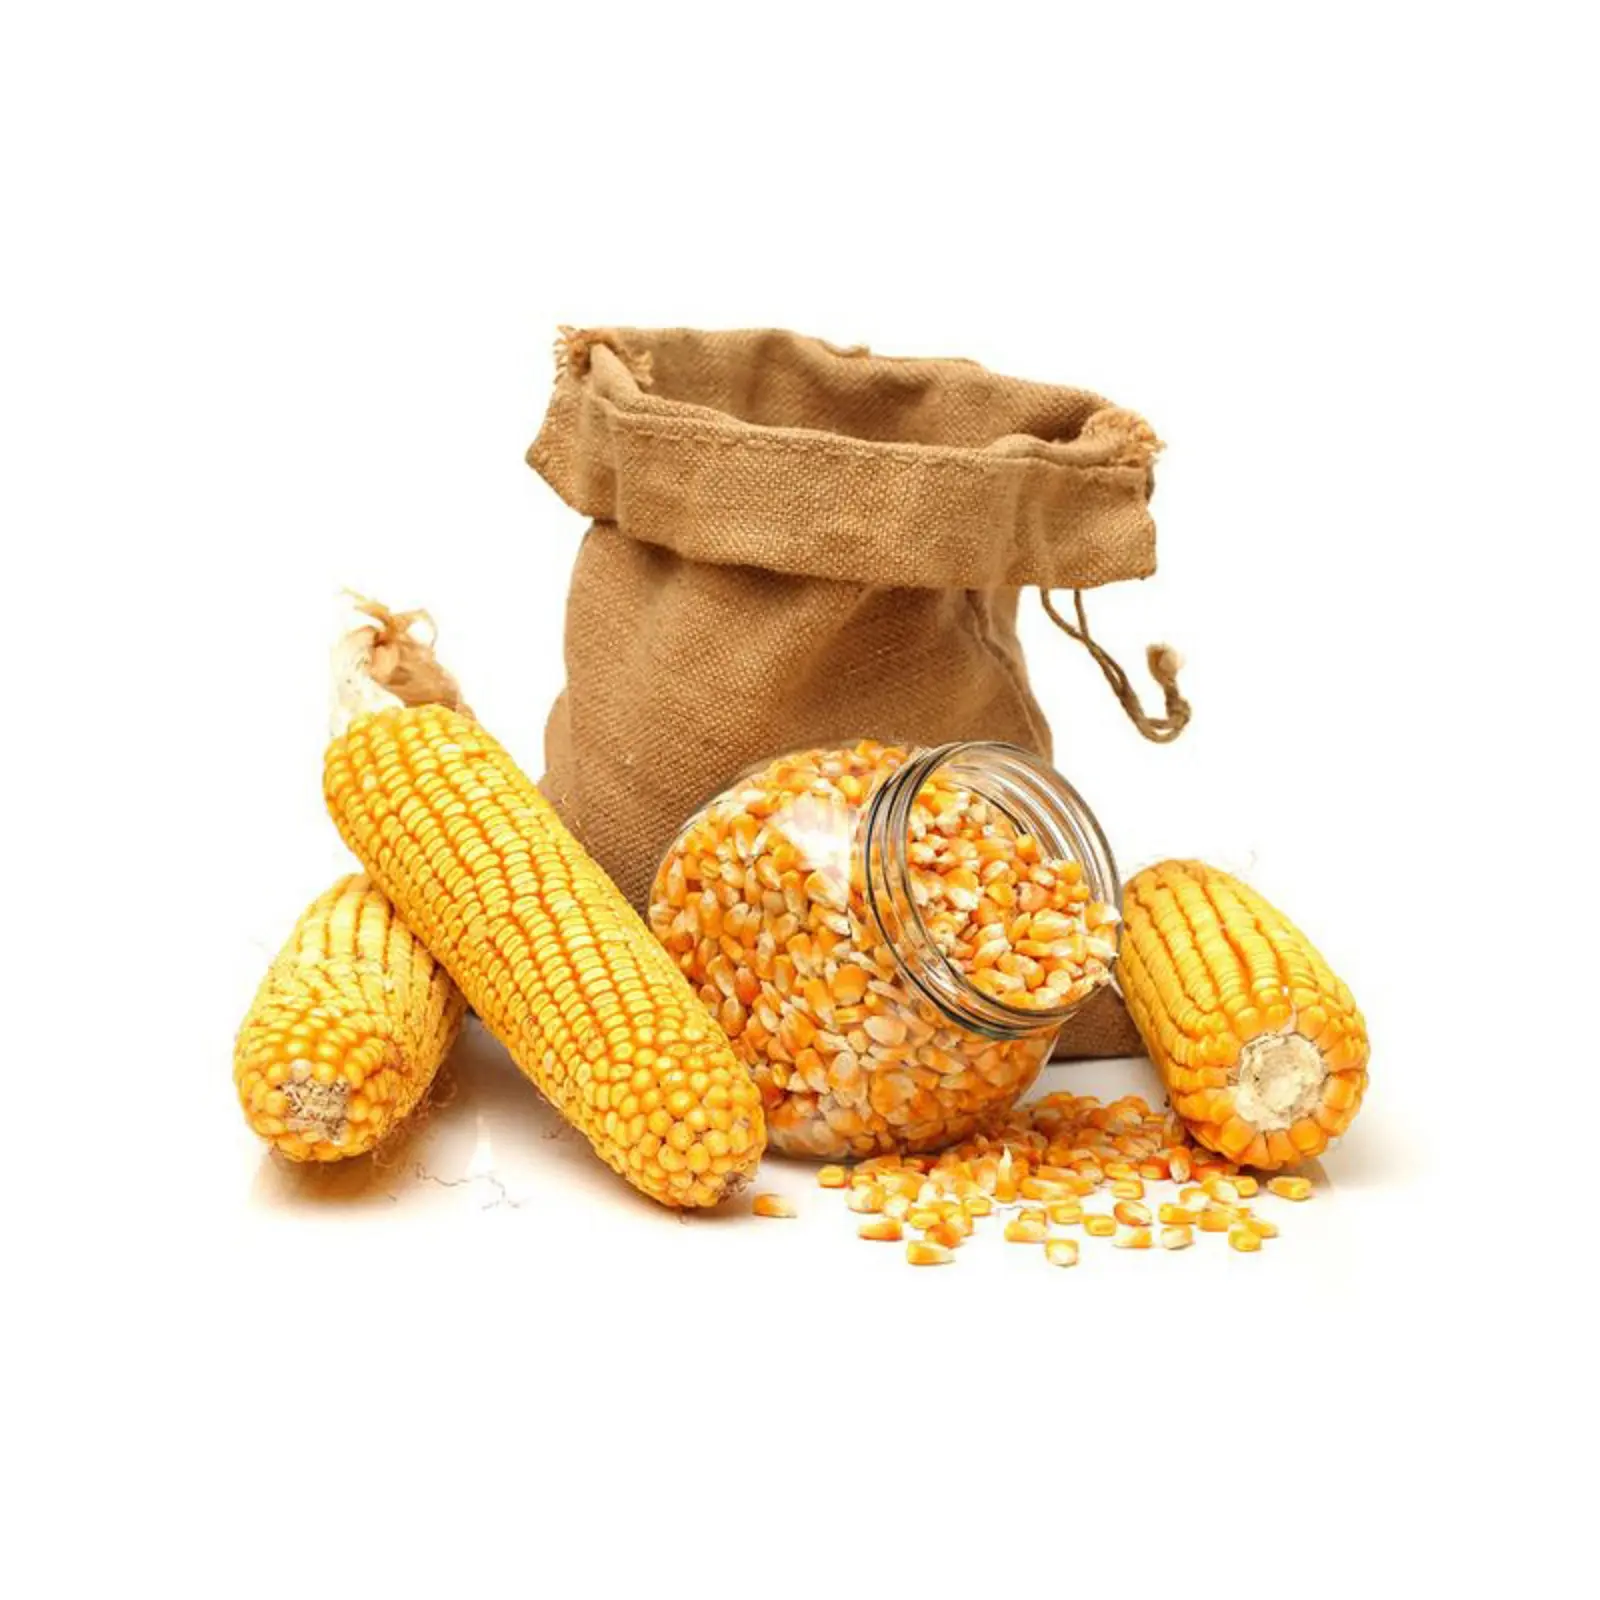 Jagung putih jagung pemasok terbaik/pemasok jagung organik/jagung kuning untuk konsumsi manusia dan hewan